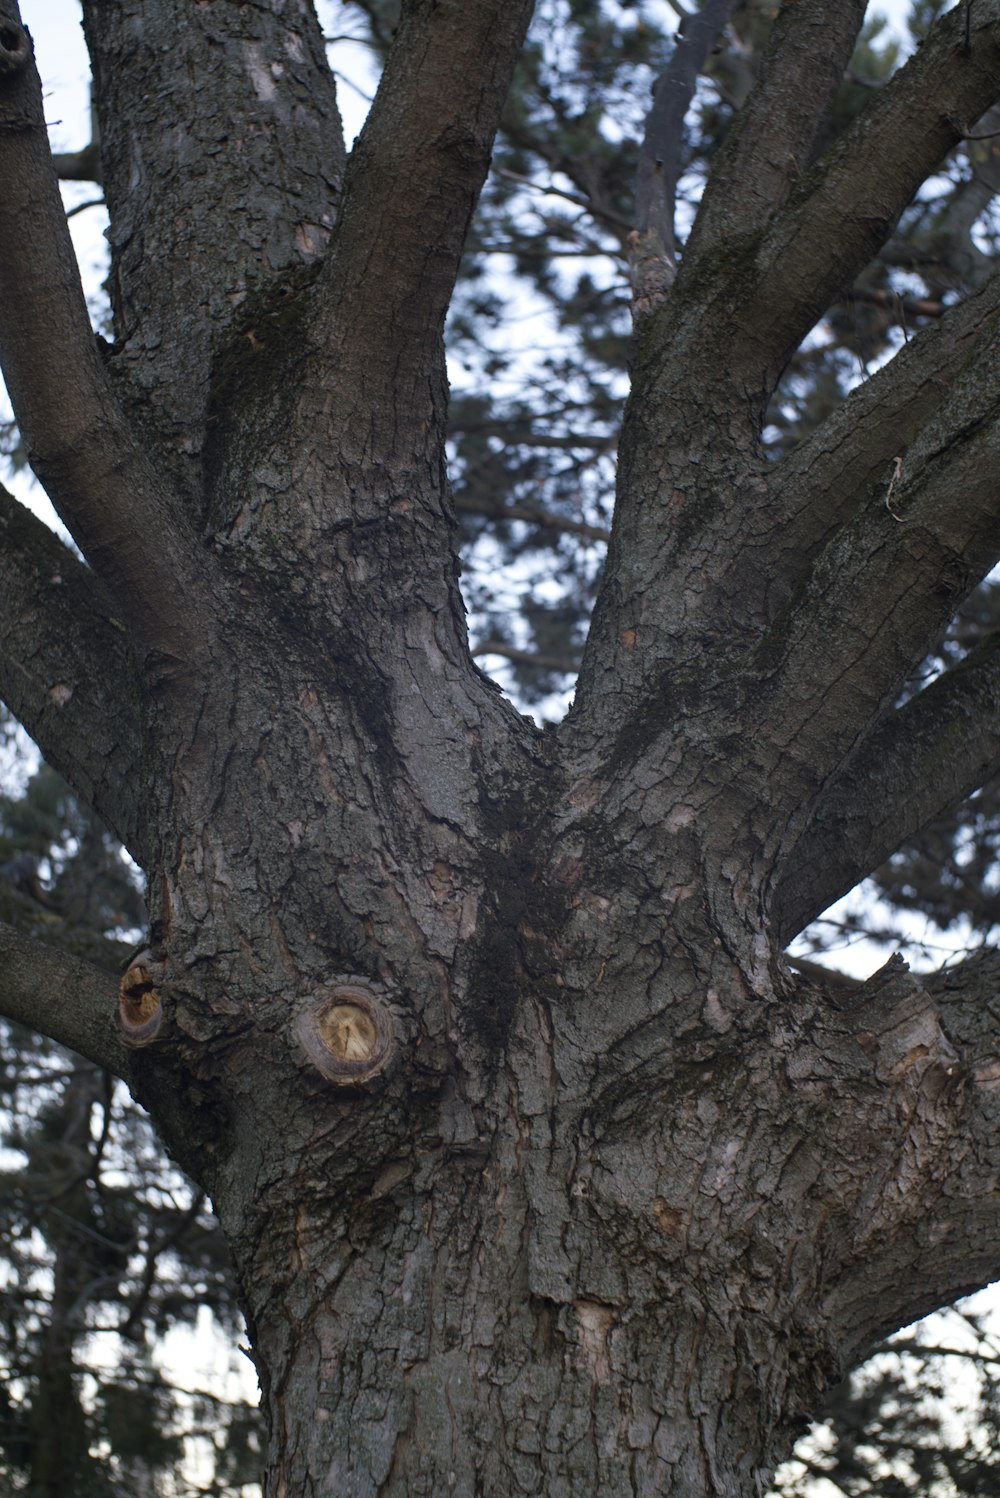 a close up of a tree with a bird in it's mouth